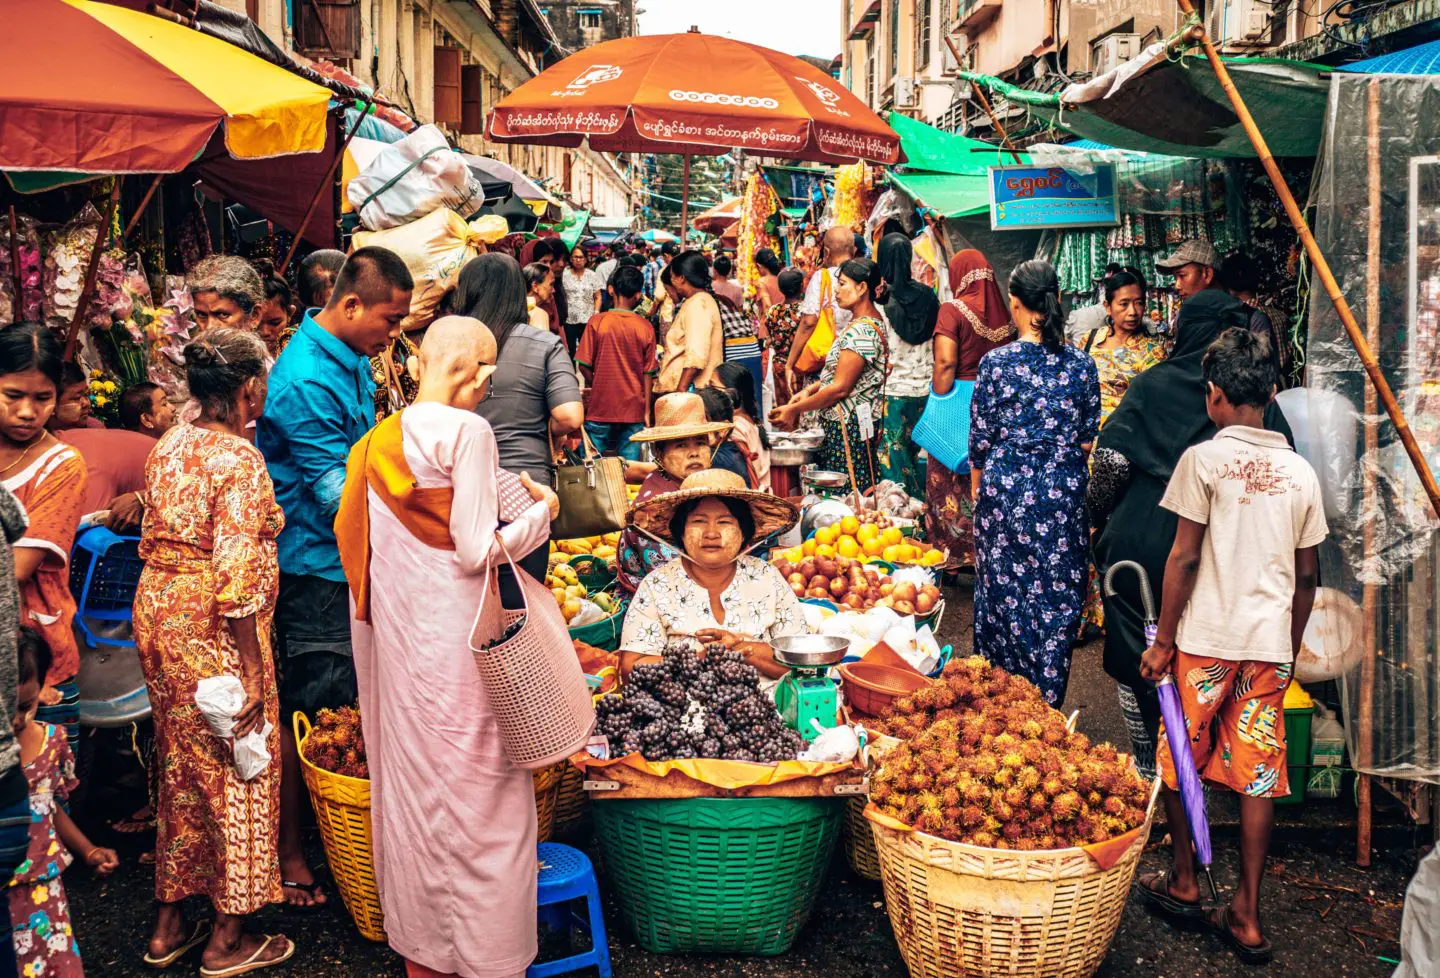 Yangon itinerary - 3 days in Yangon - street vendors